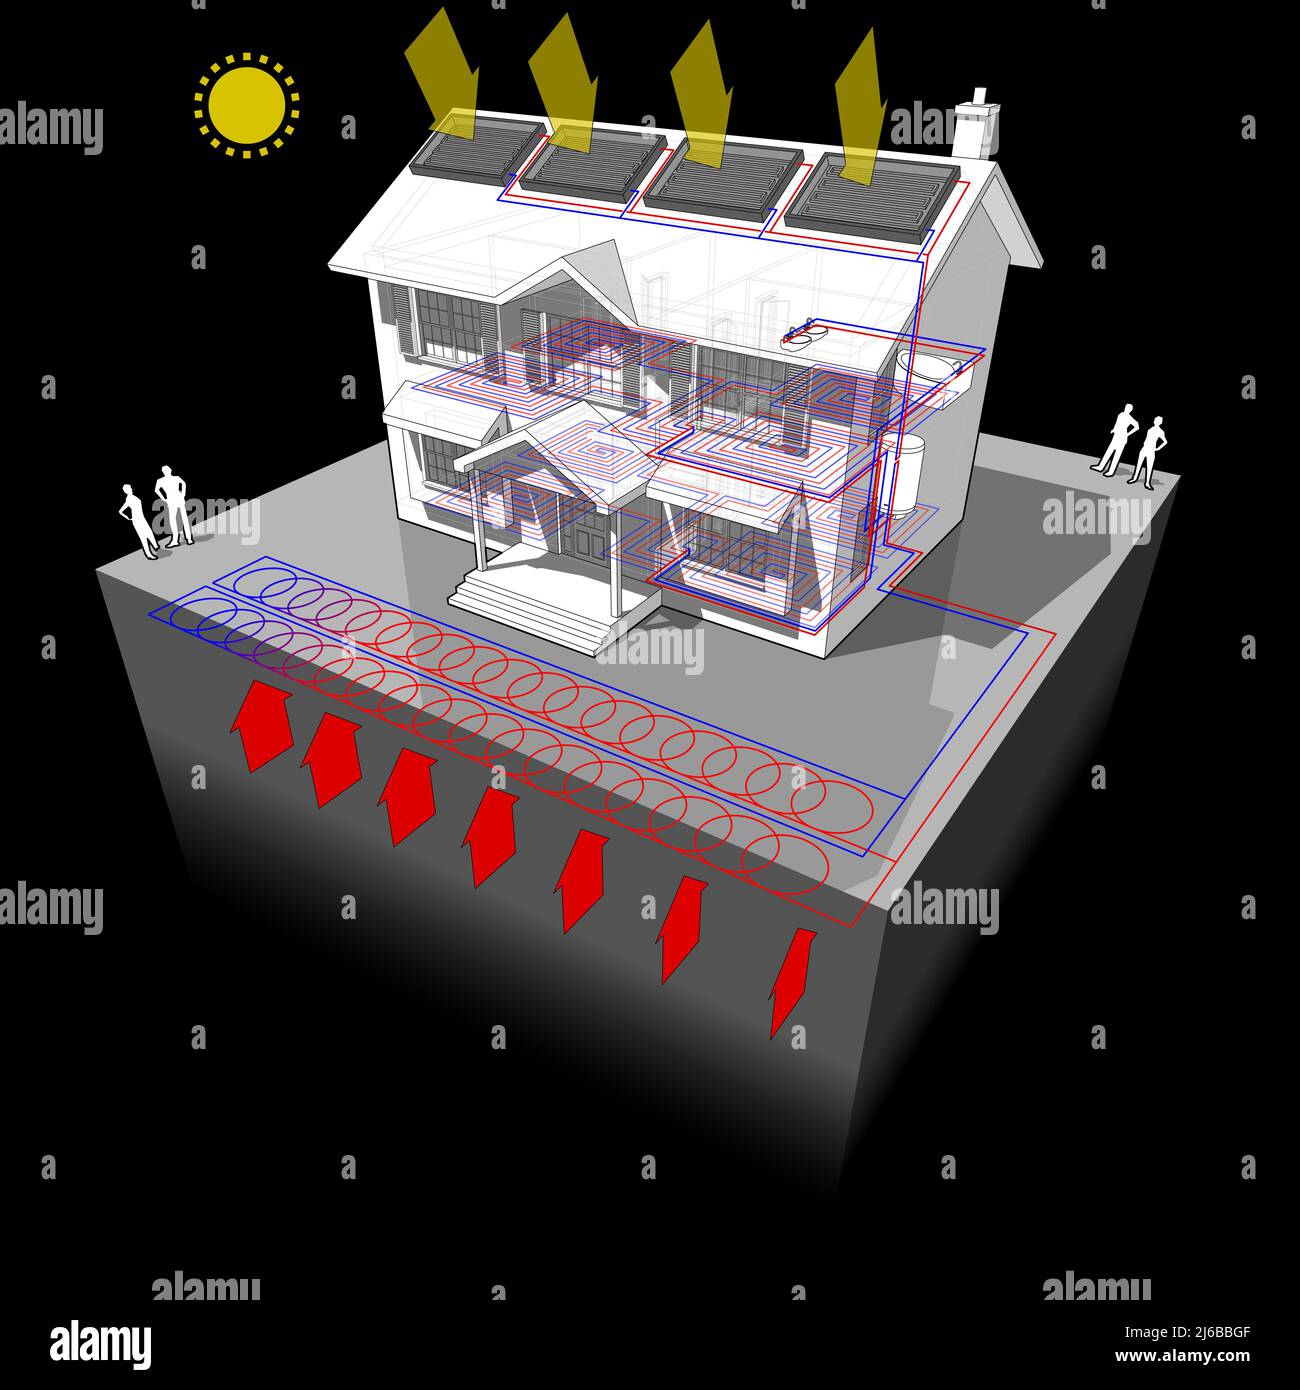 Diagramm eines klassischen Kolonialhauses mit Erdwärmepumpe bekannt als Slinky Loop und Sonnenkollektoren auf dem Dach als Energiequelle für die Heizung Stockfoto